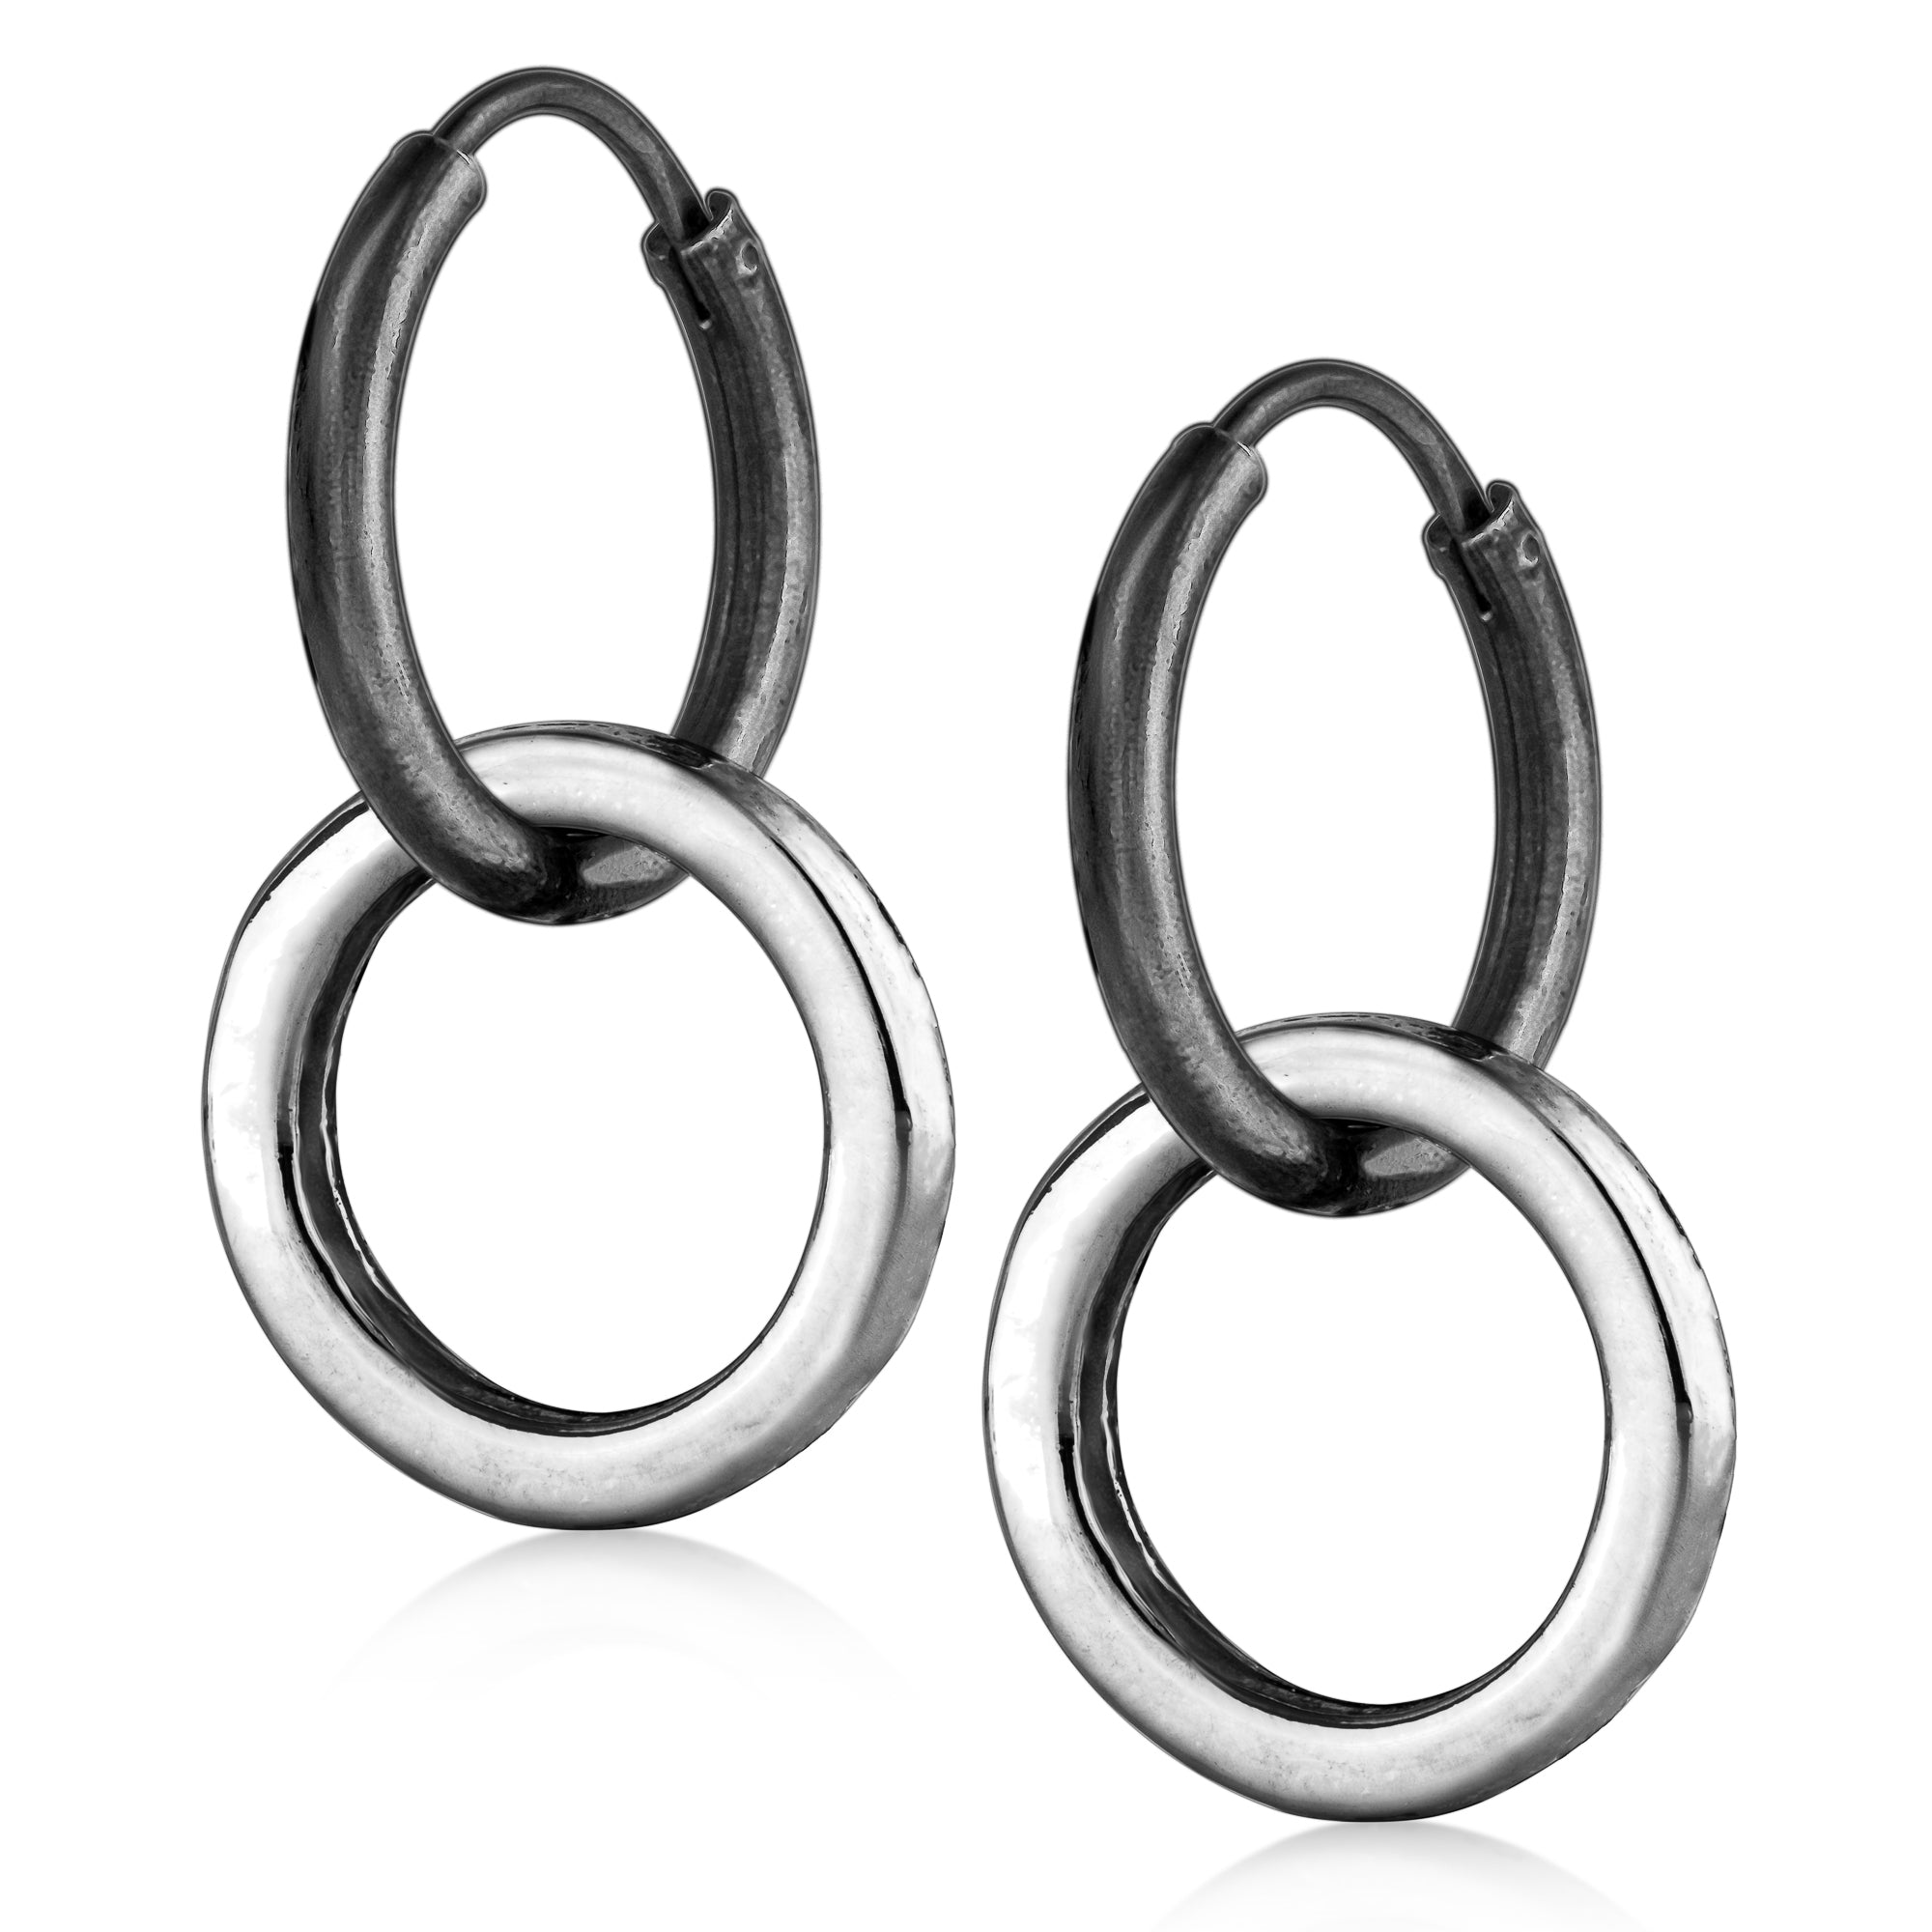 Rings and Earrings - Men